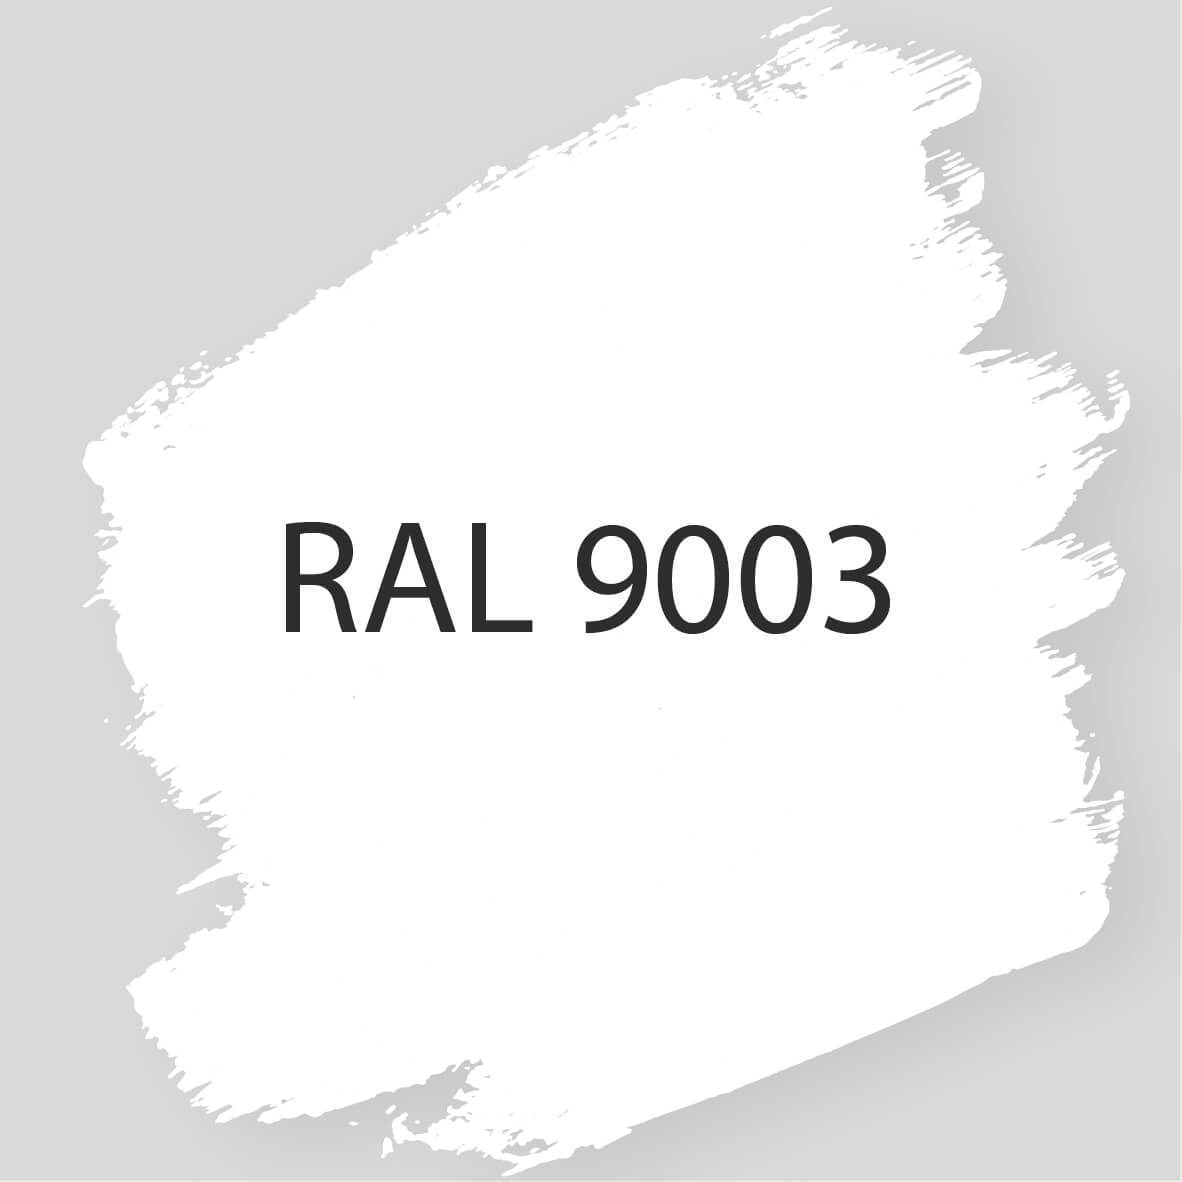 RAL 9003 - verf-behang verbouwen - WONEN.nl